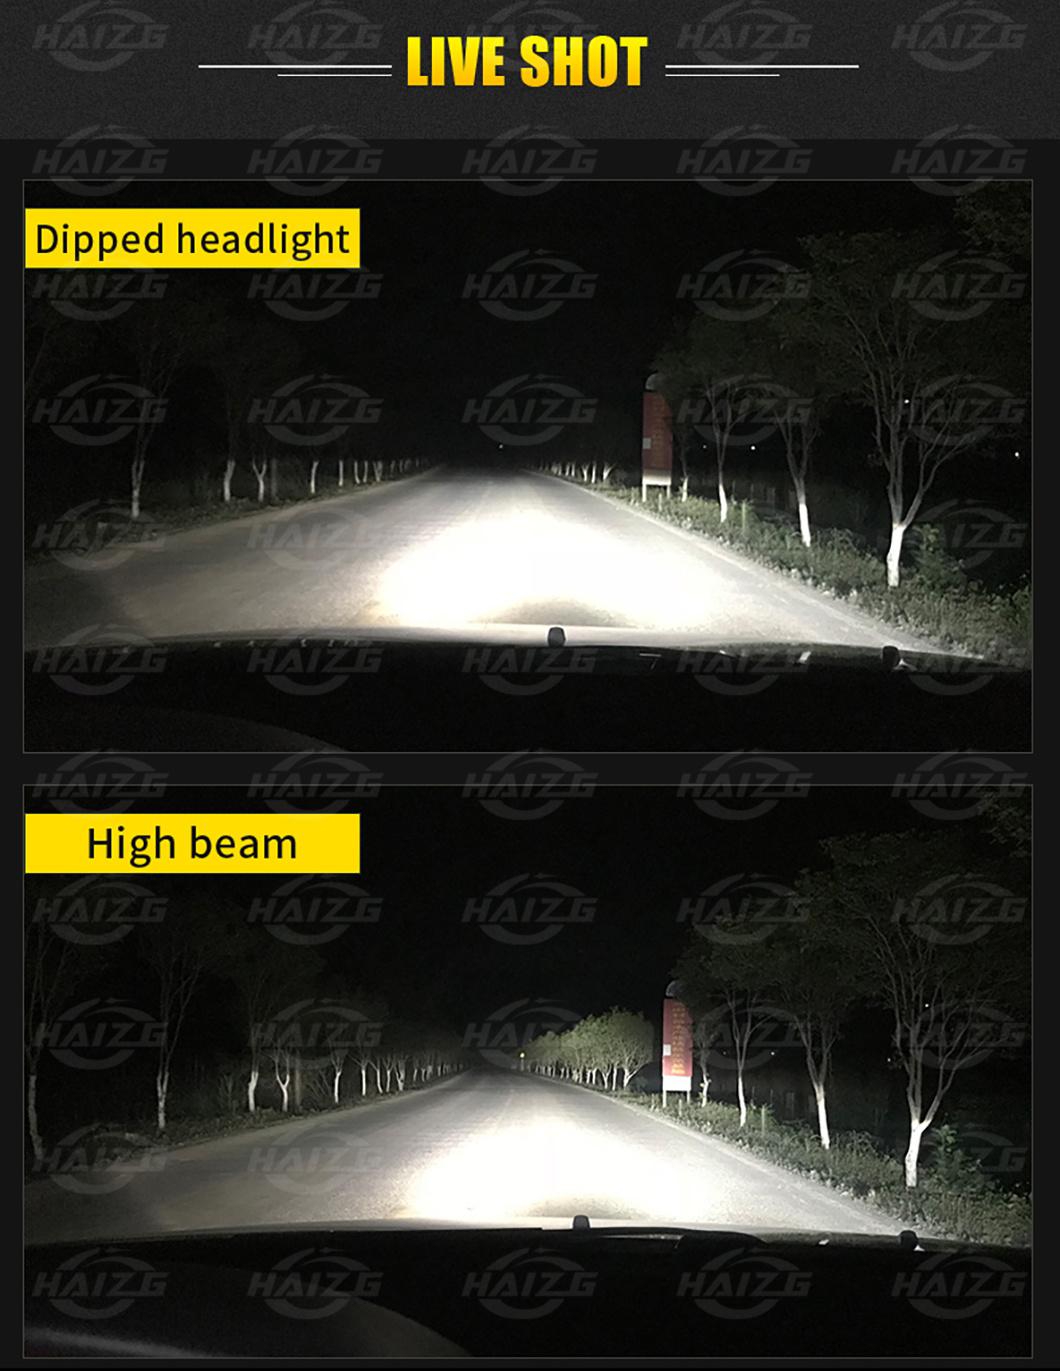 Haizg Super Bright Car LED Bulbs S2 Car LED Headlight